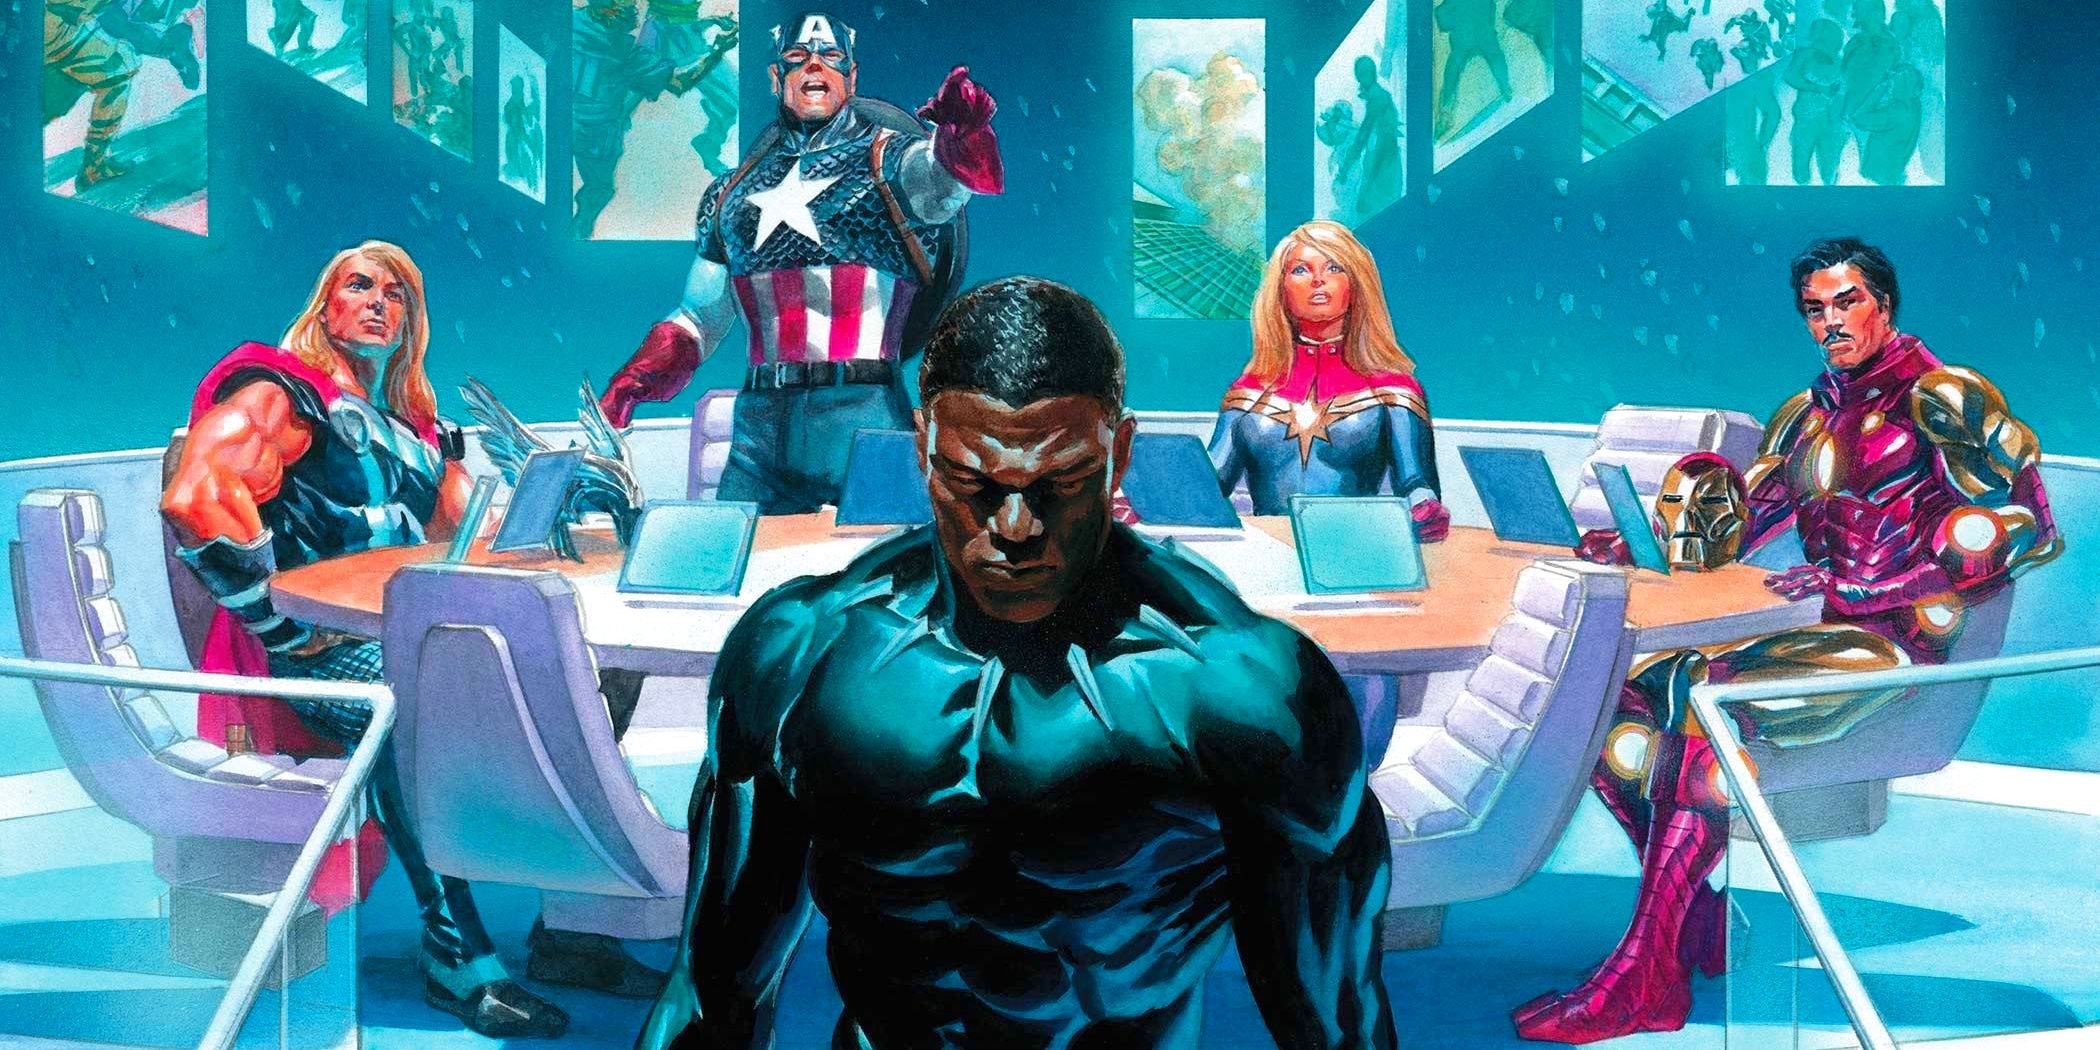 Black Panther expulsé des Avengers dans la couverture de Marvel Comics